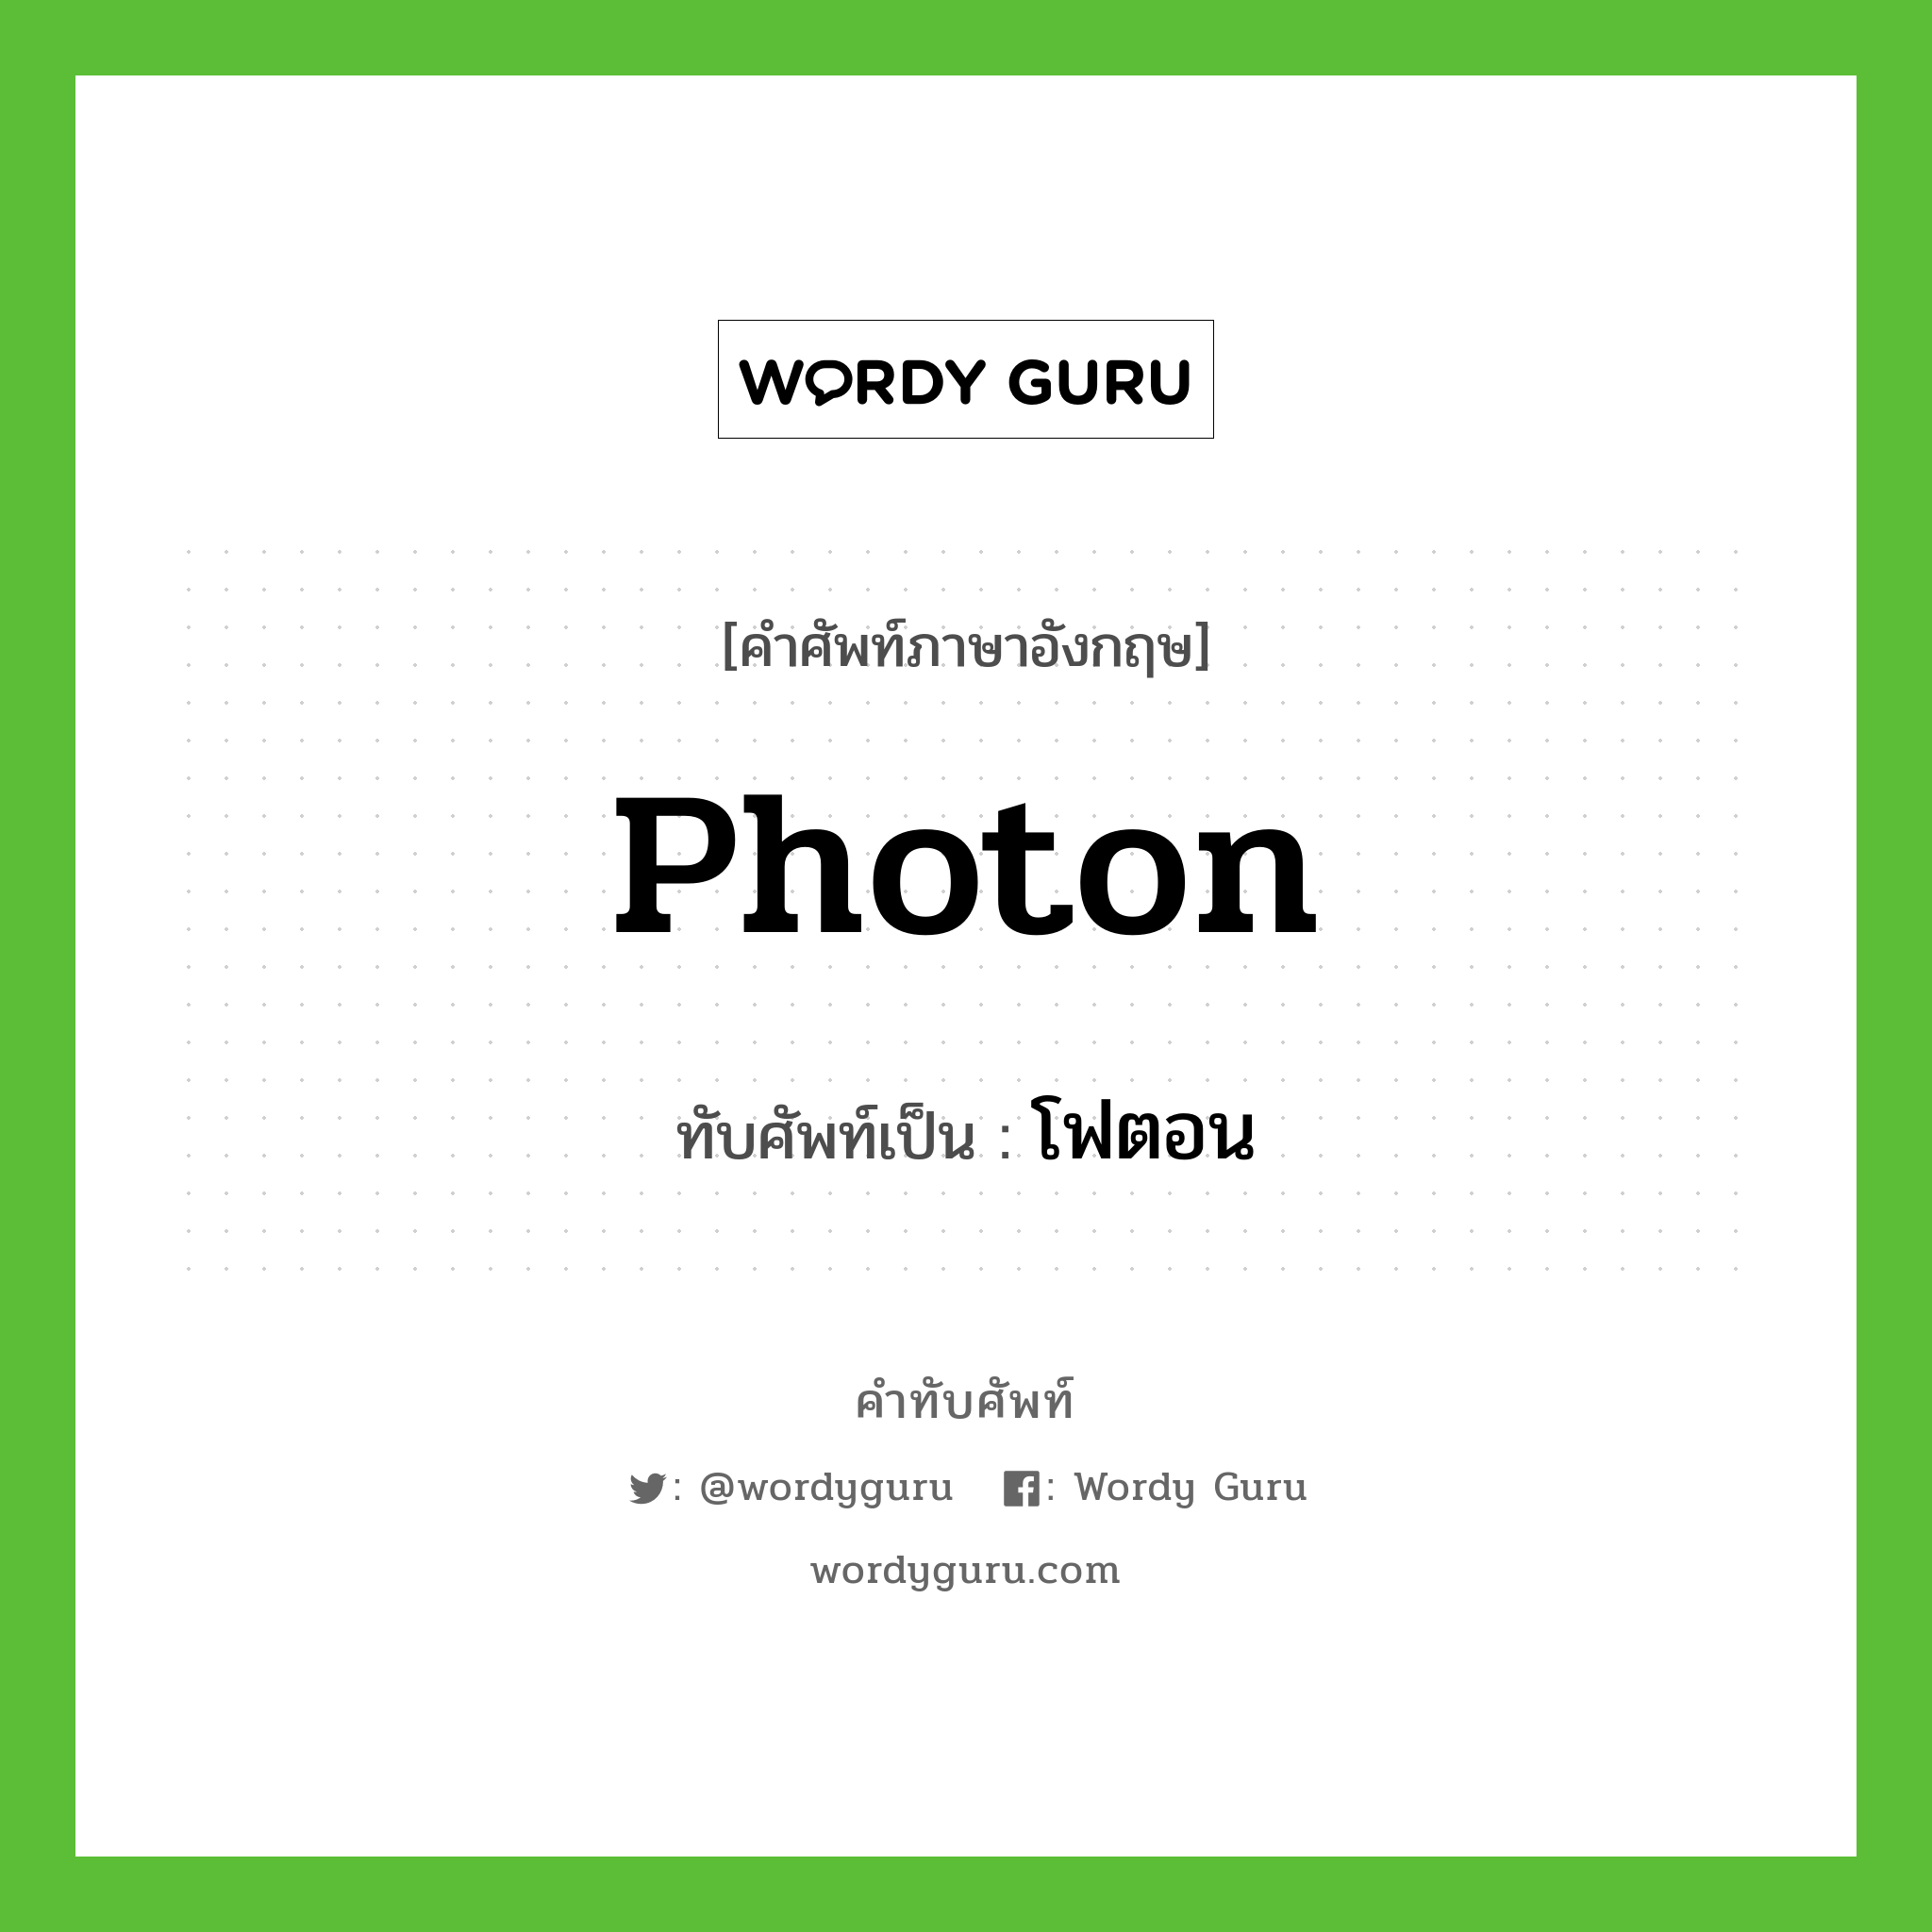 โฟตอน เขียนอย่างไร?, คำศัพท์ภาษาอังกฤษ โฟตอน ทับศัพท์เป็น photon